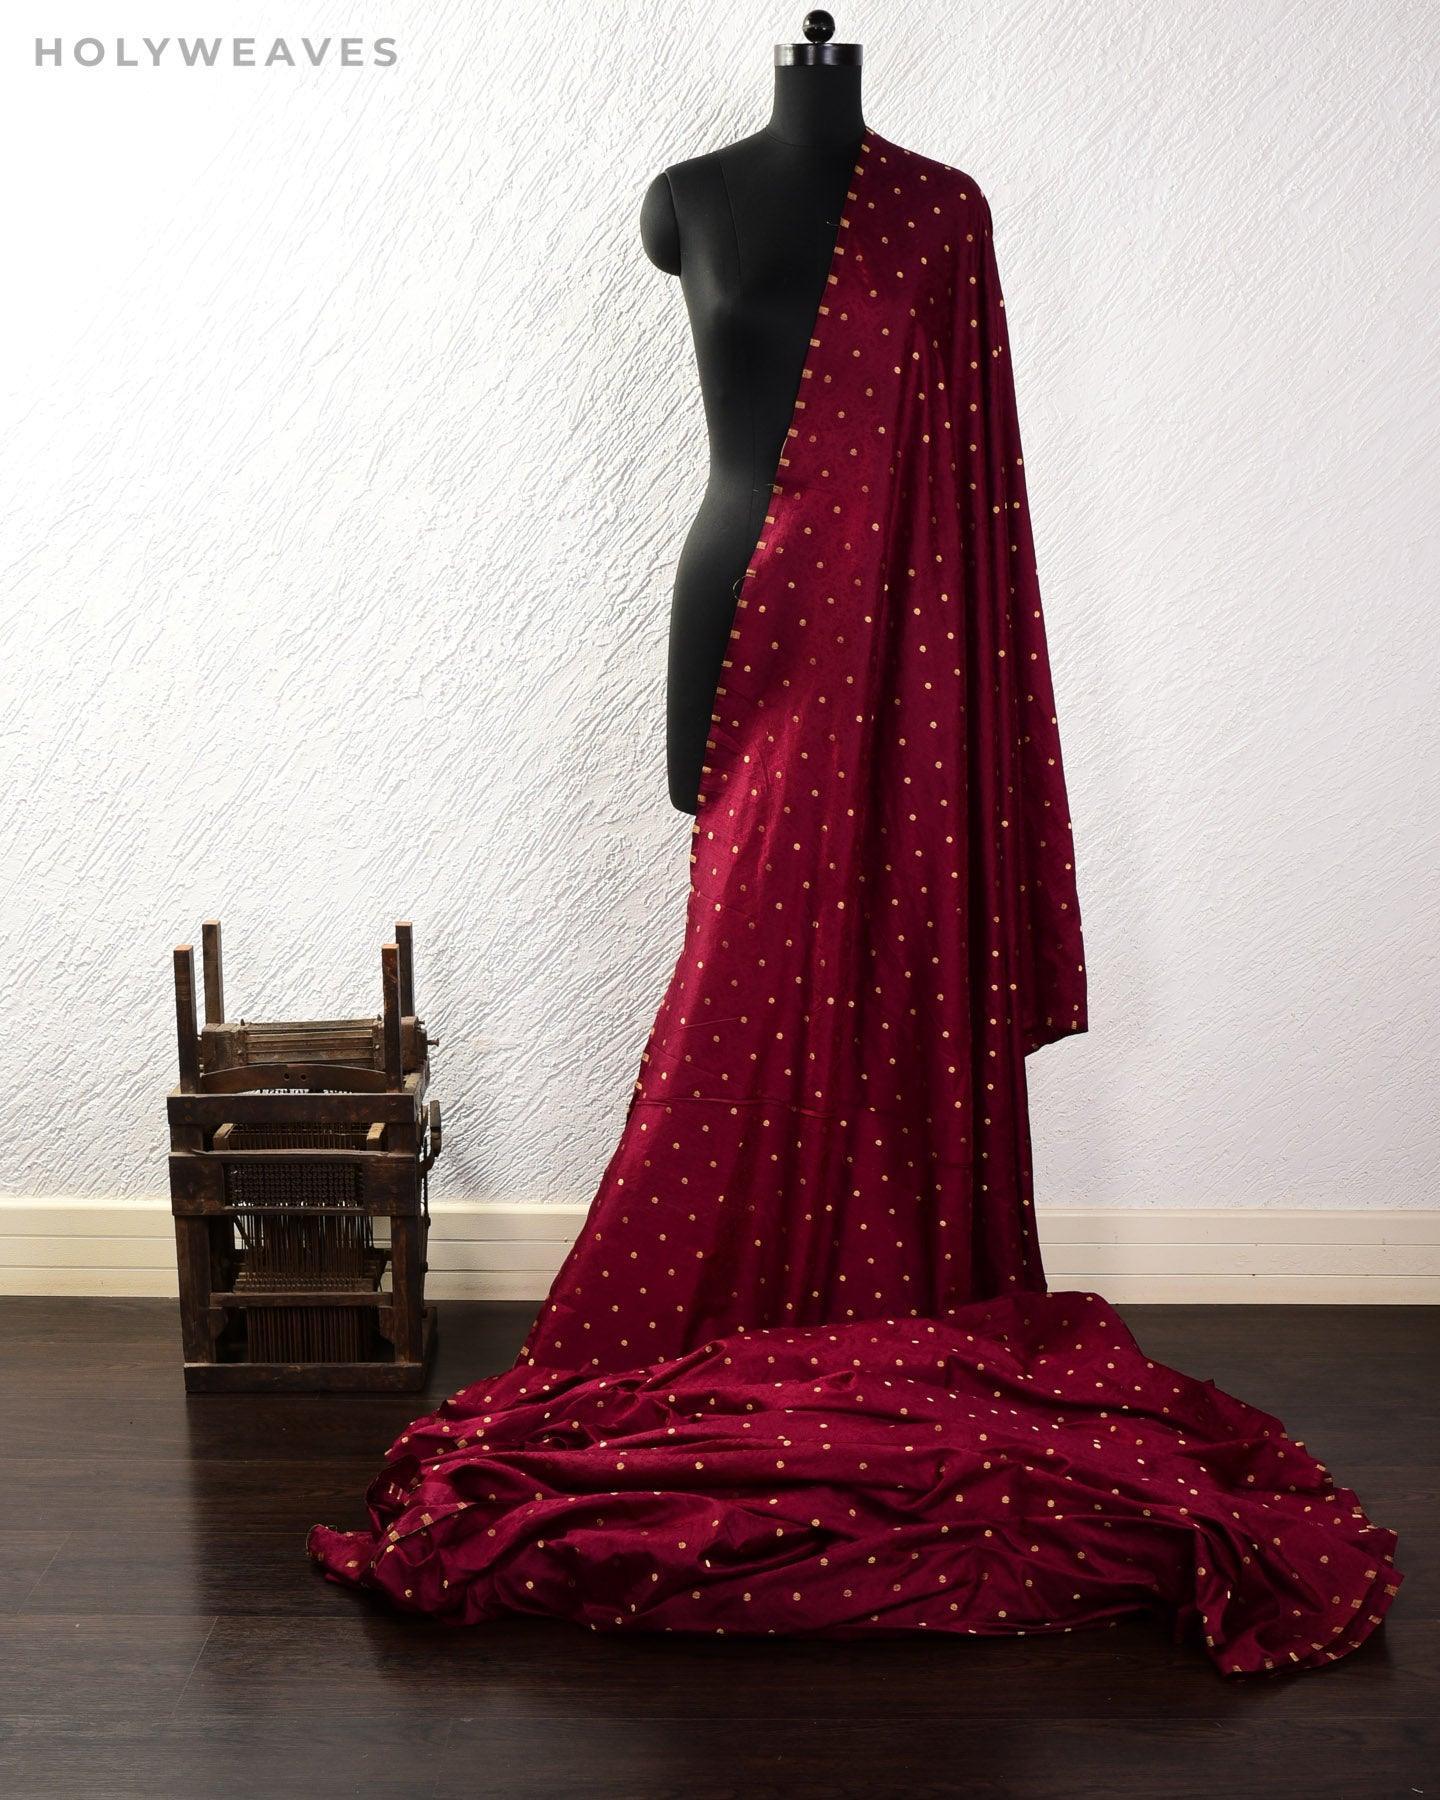 Mahogany Banarasi Tanchoi Brocade Handwoven Katan Silk Fabric with Zari Accents - By HolyWeaves, Benares